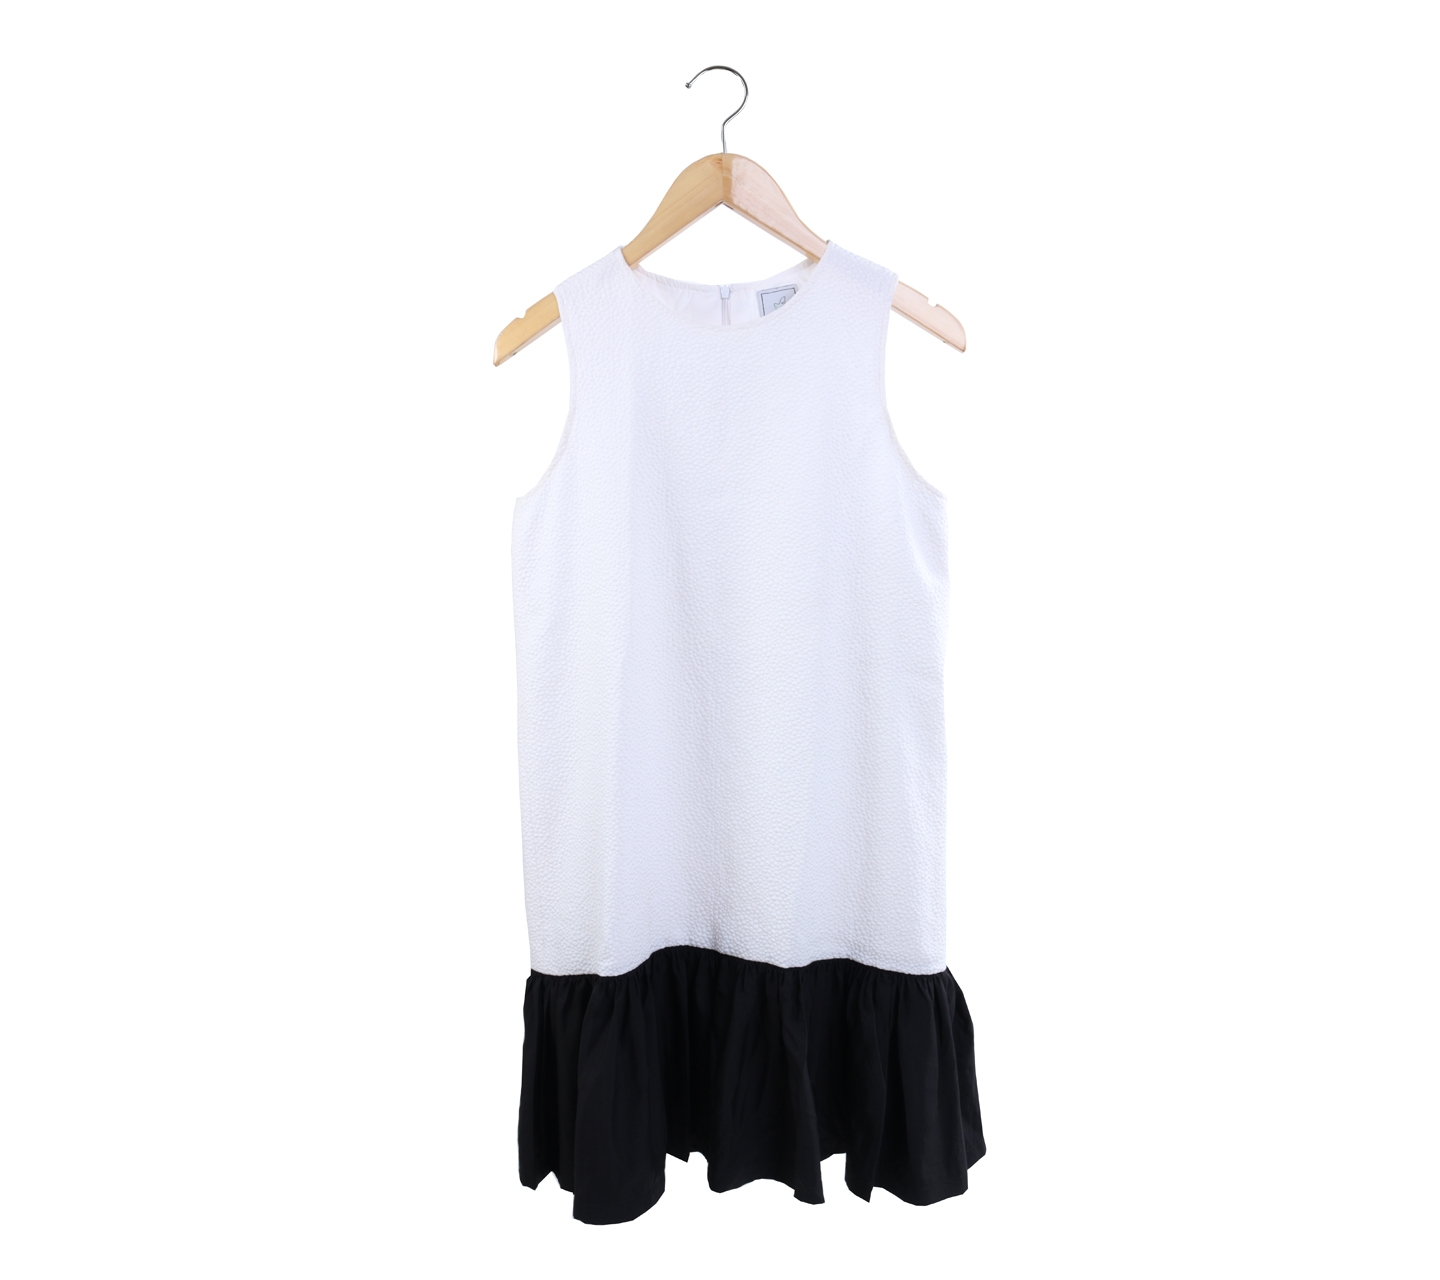 Kalalula White And Black Mini Dress